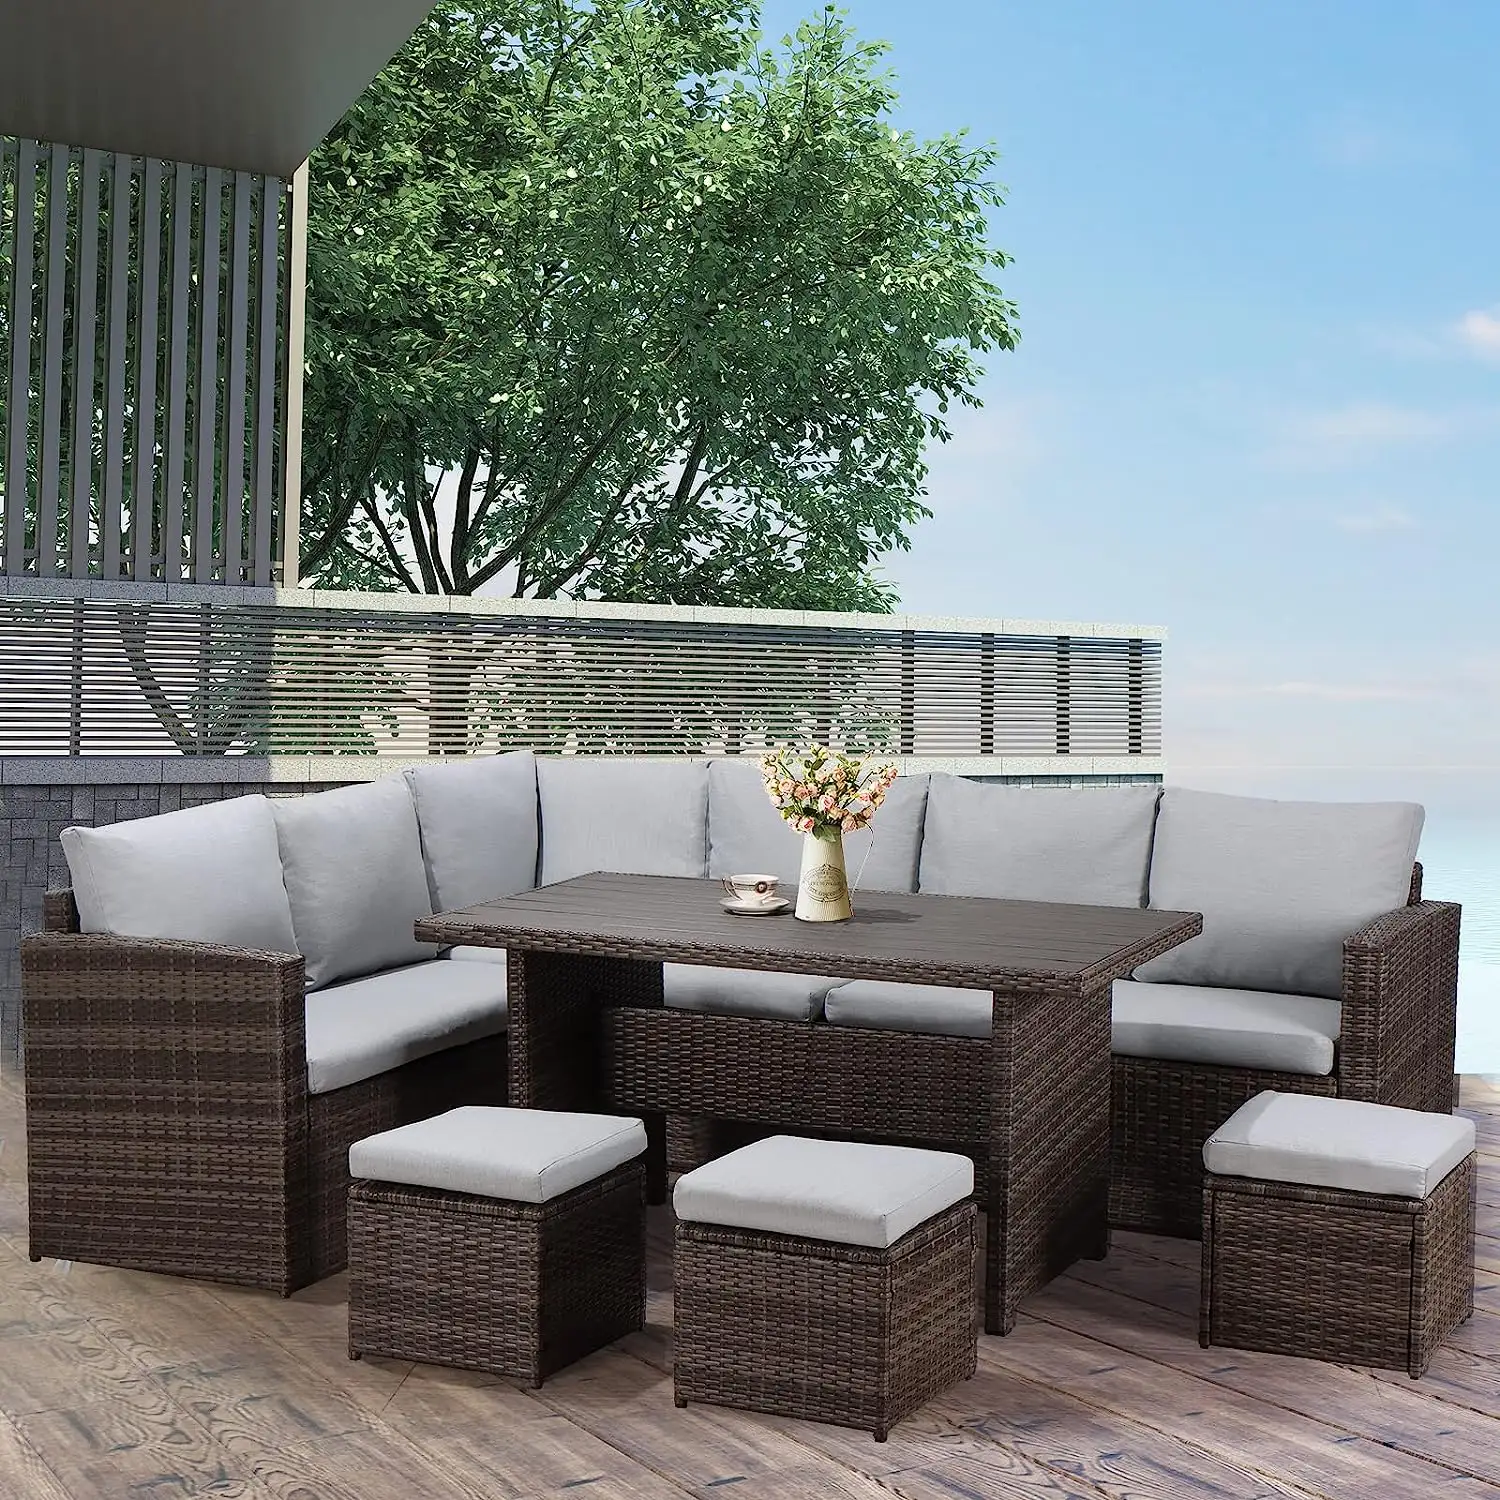 Garten Rattan Wicker Möbel Outdoor Lounge Set Rattan Outdoor Stühle und Sofas mit höhen verstellbarem Tisch